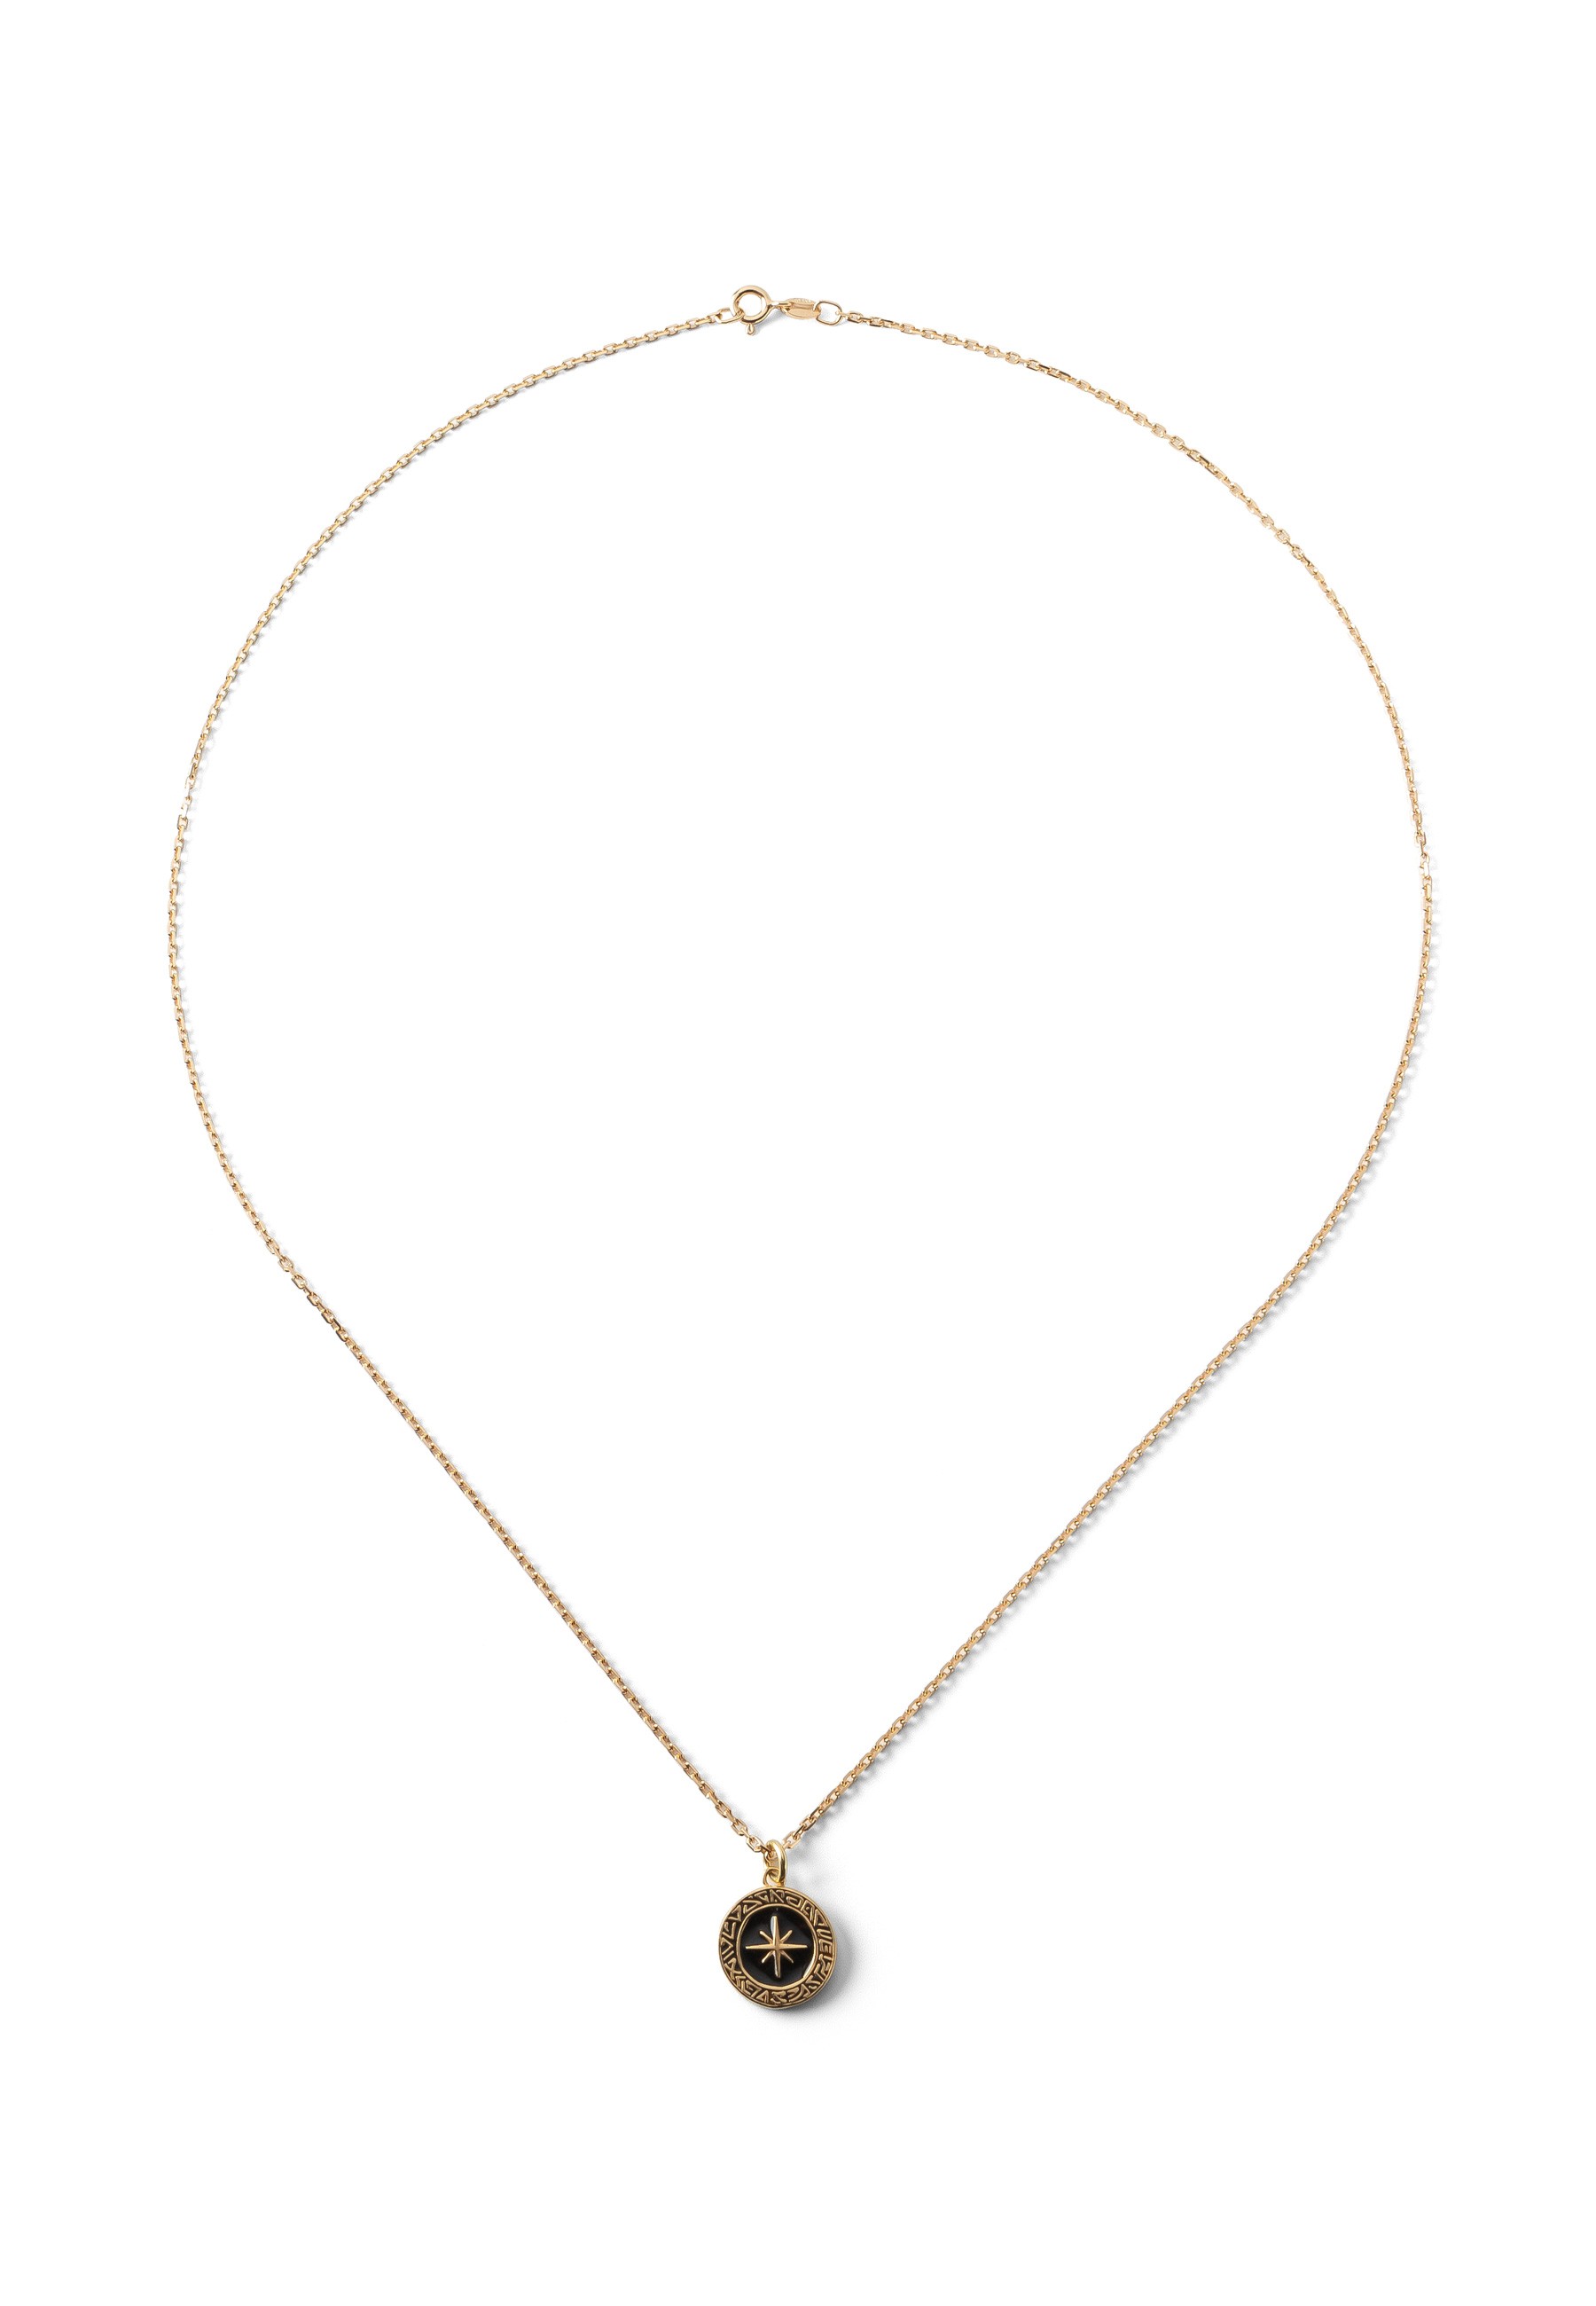 Zarte Kompass-Halskette, sterling silber 925